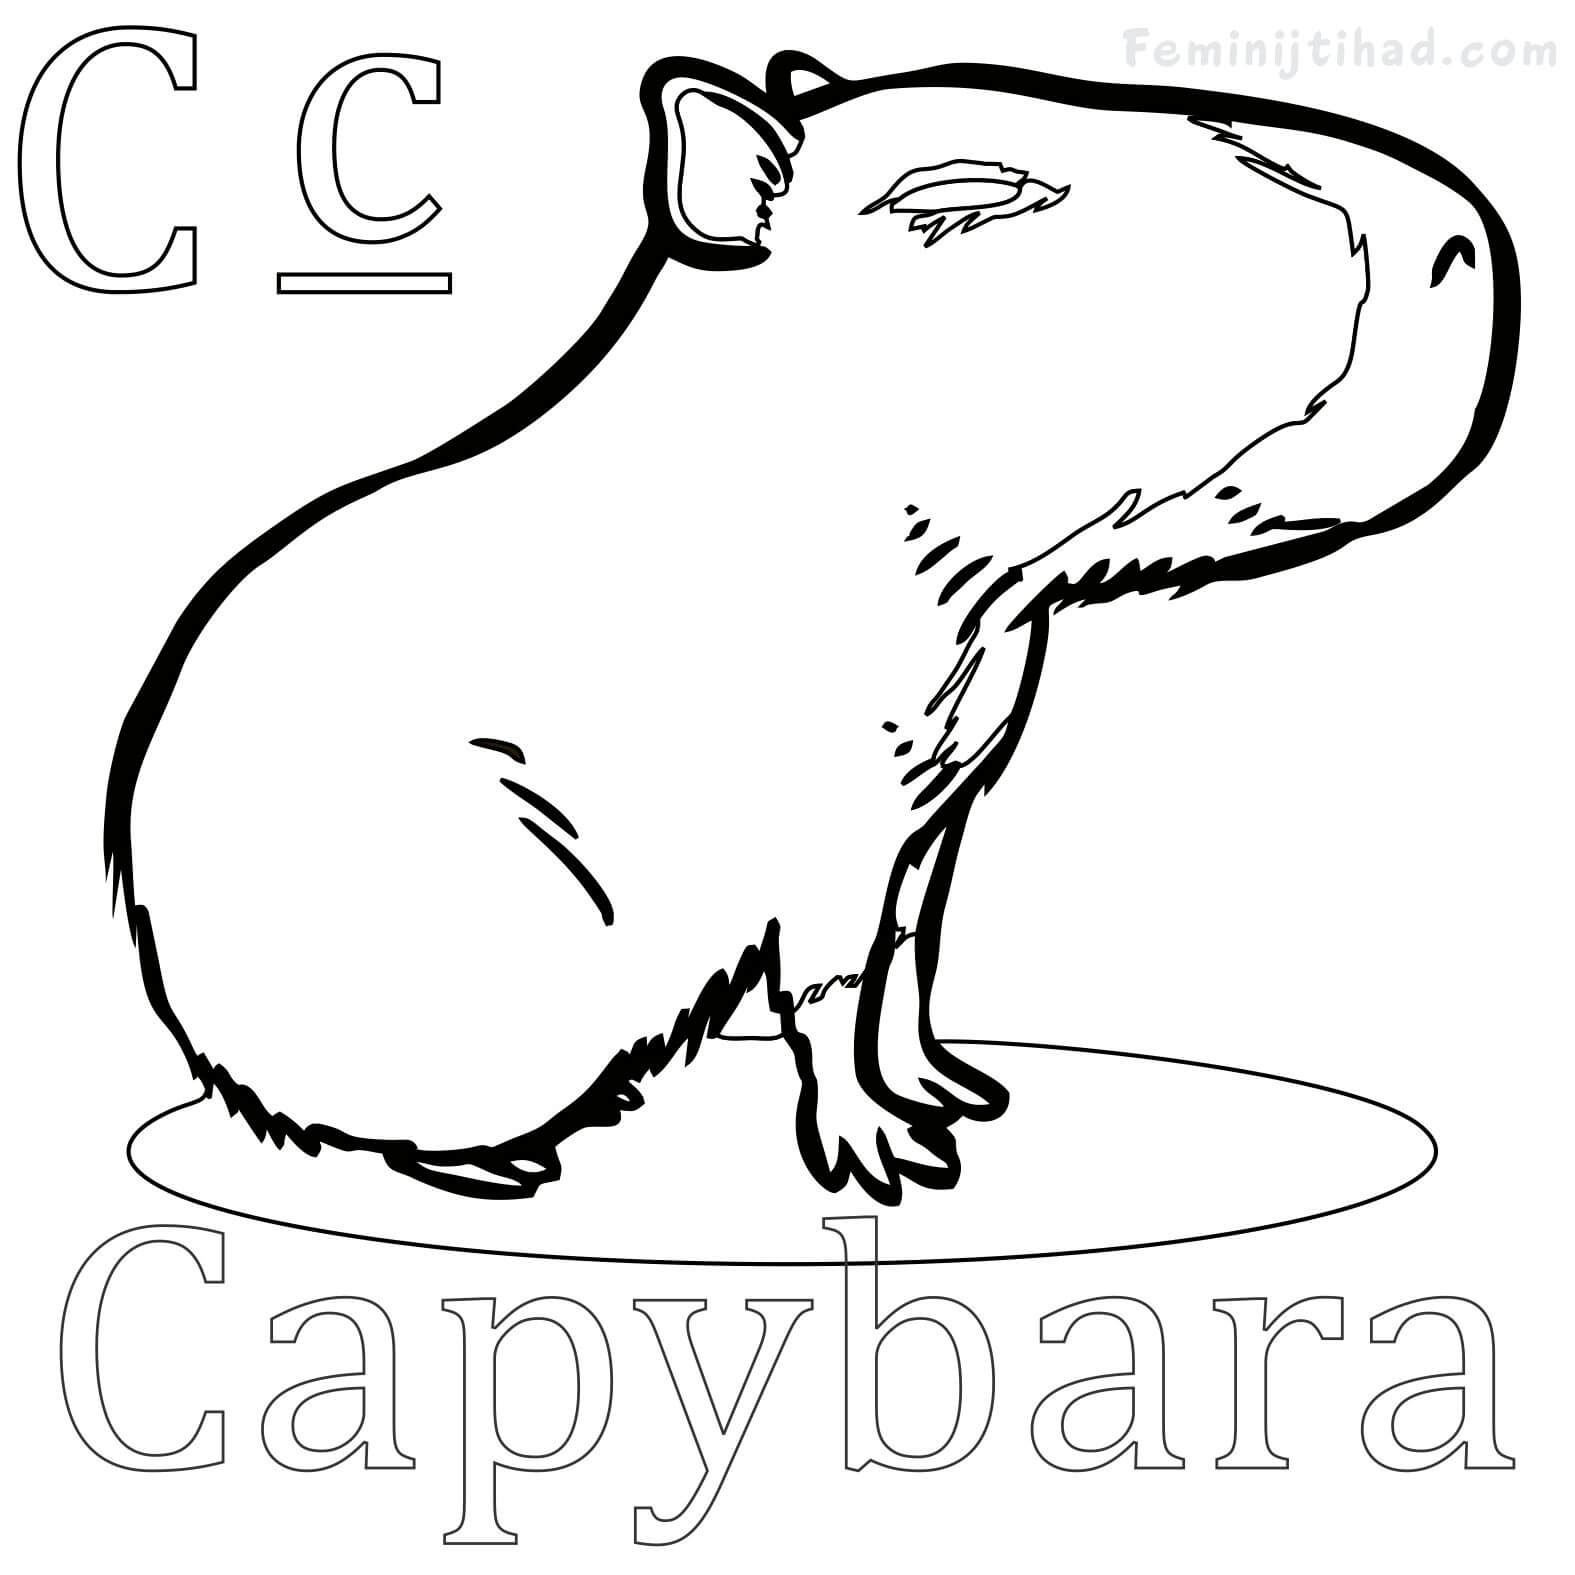 Capybara Coloring Page Online